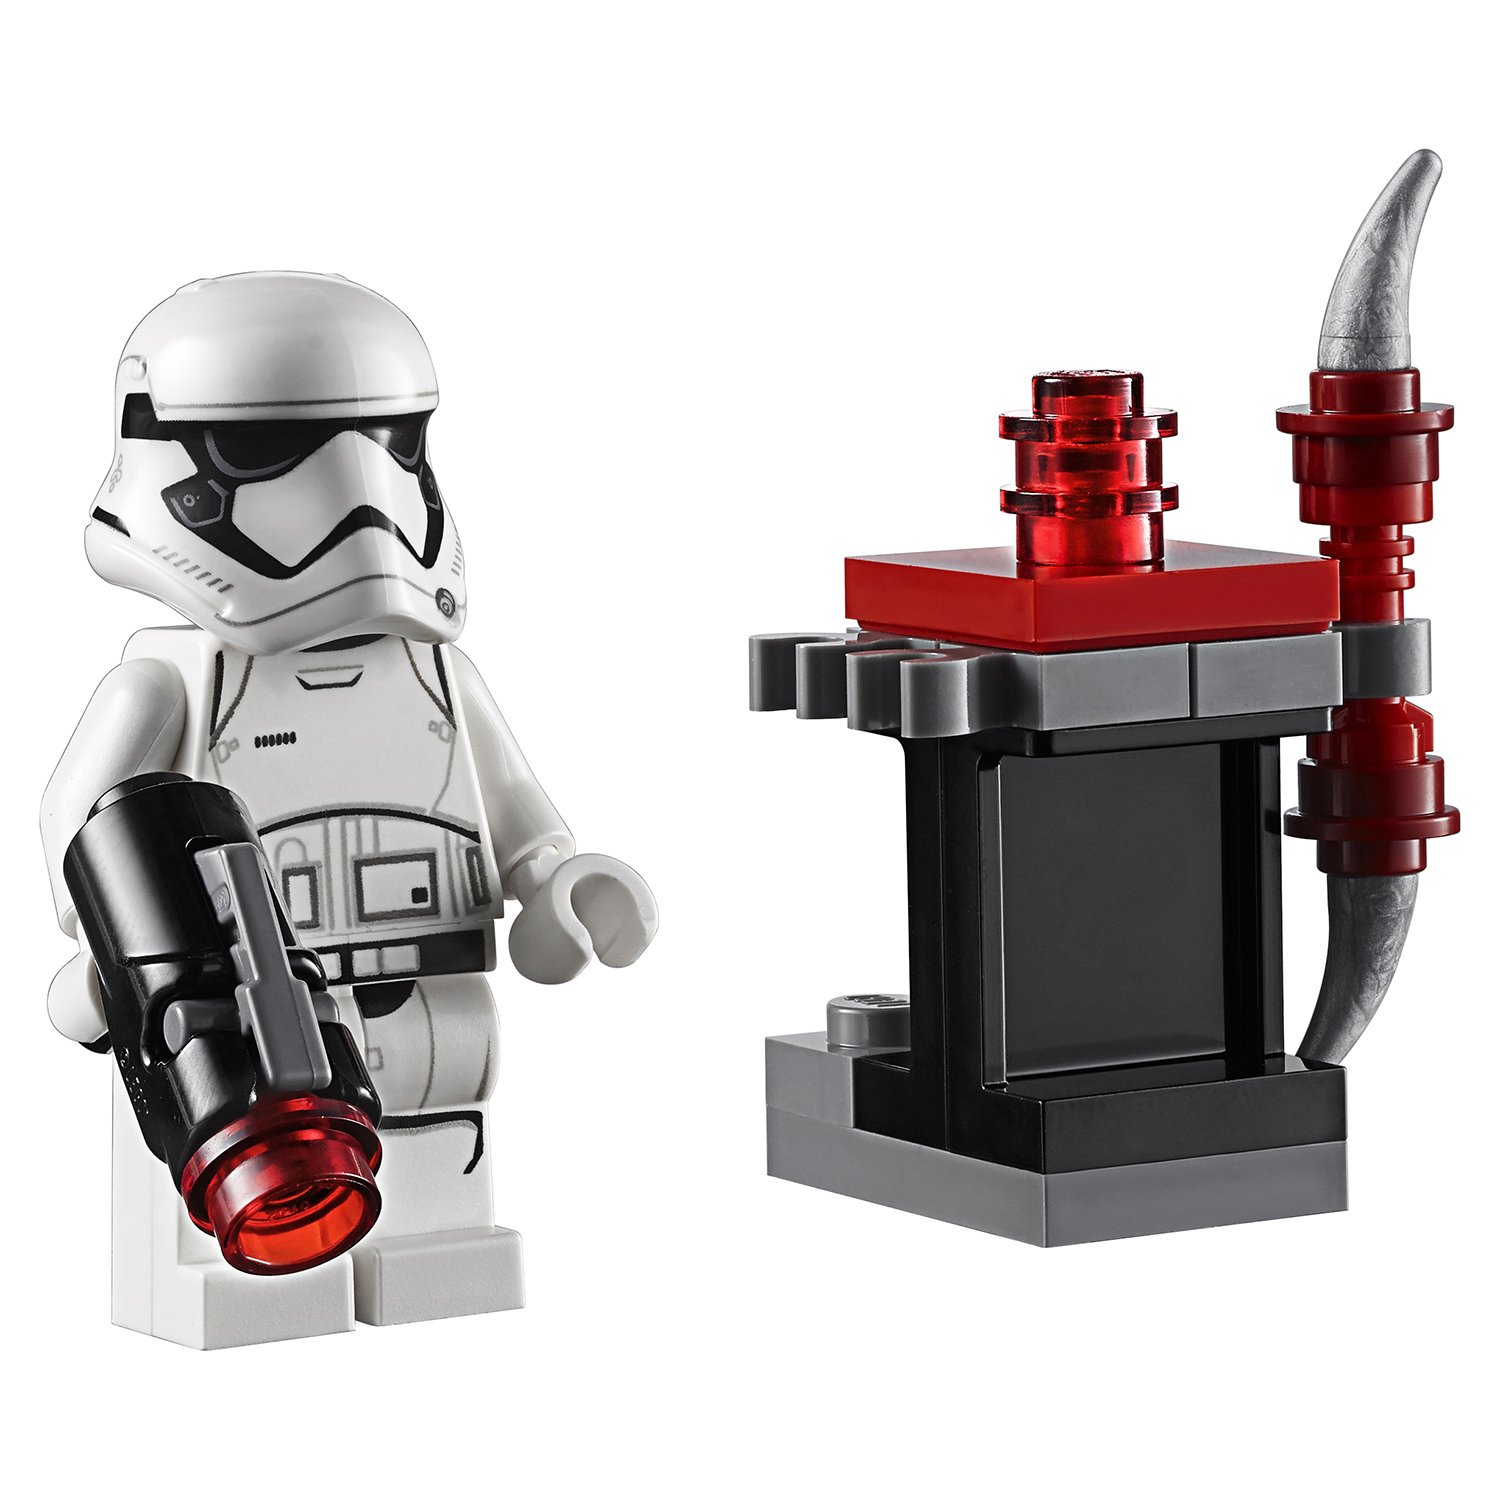 Lego Star Wars 75225 Боевой набор Элитной преторианской гвардии